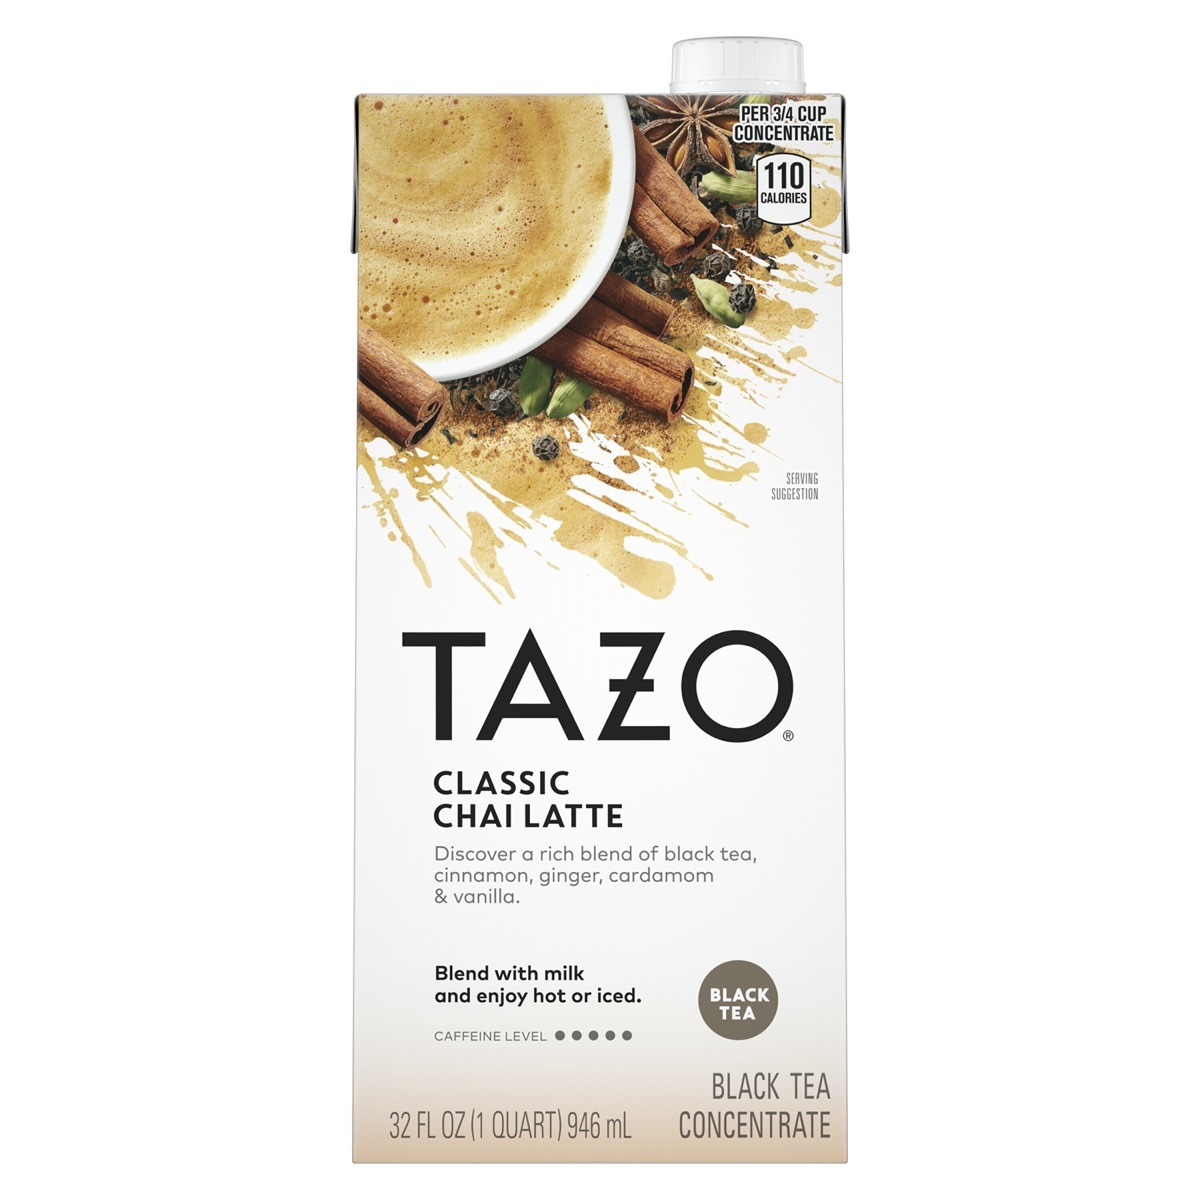 Tazo Chai Latte Tea Concentrate